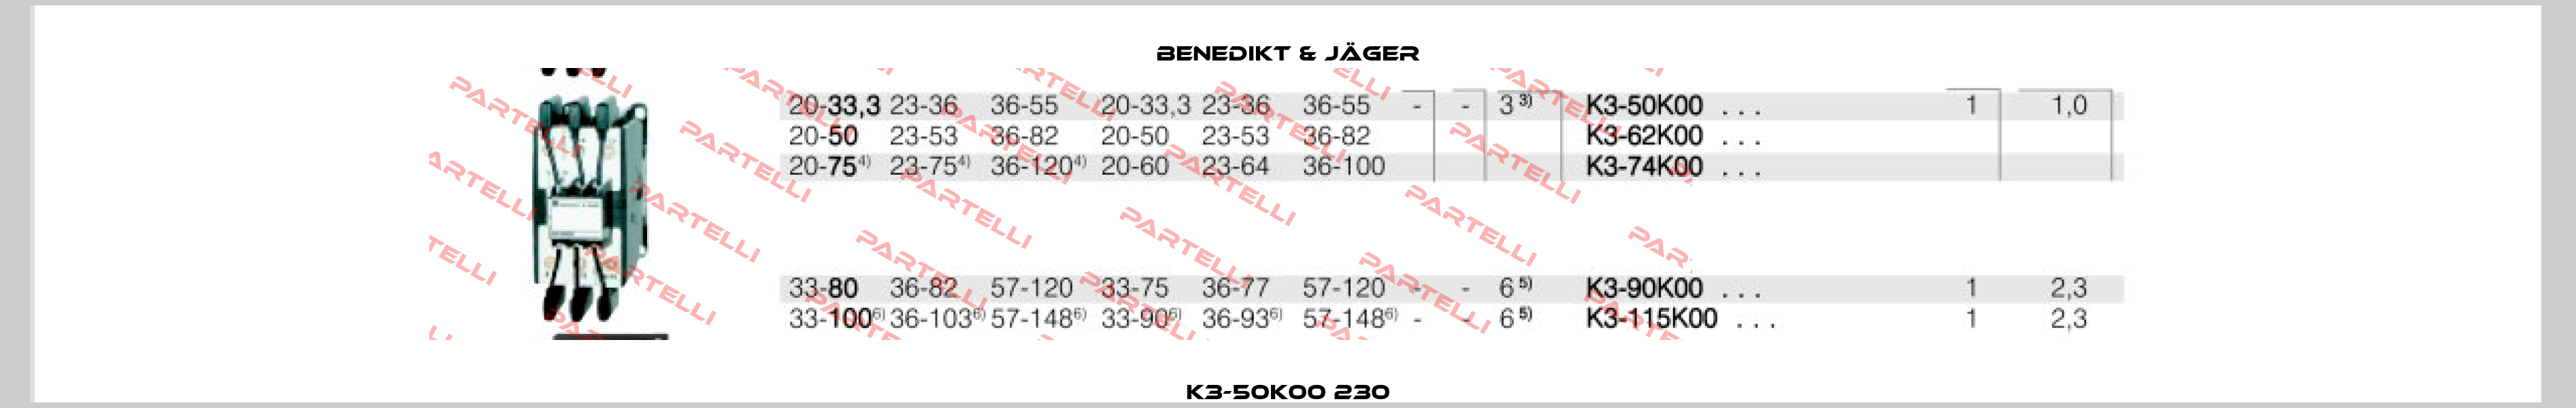 K3-50K00 230 Benedikt & Jäger